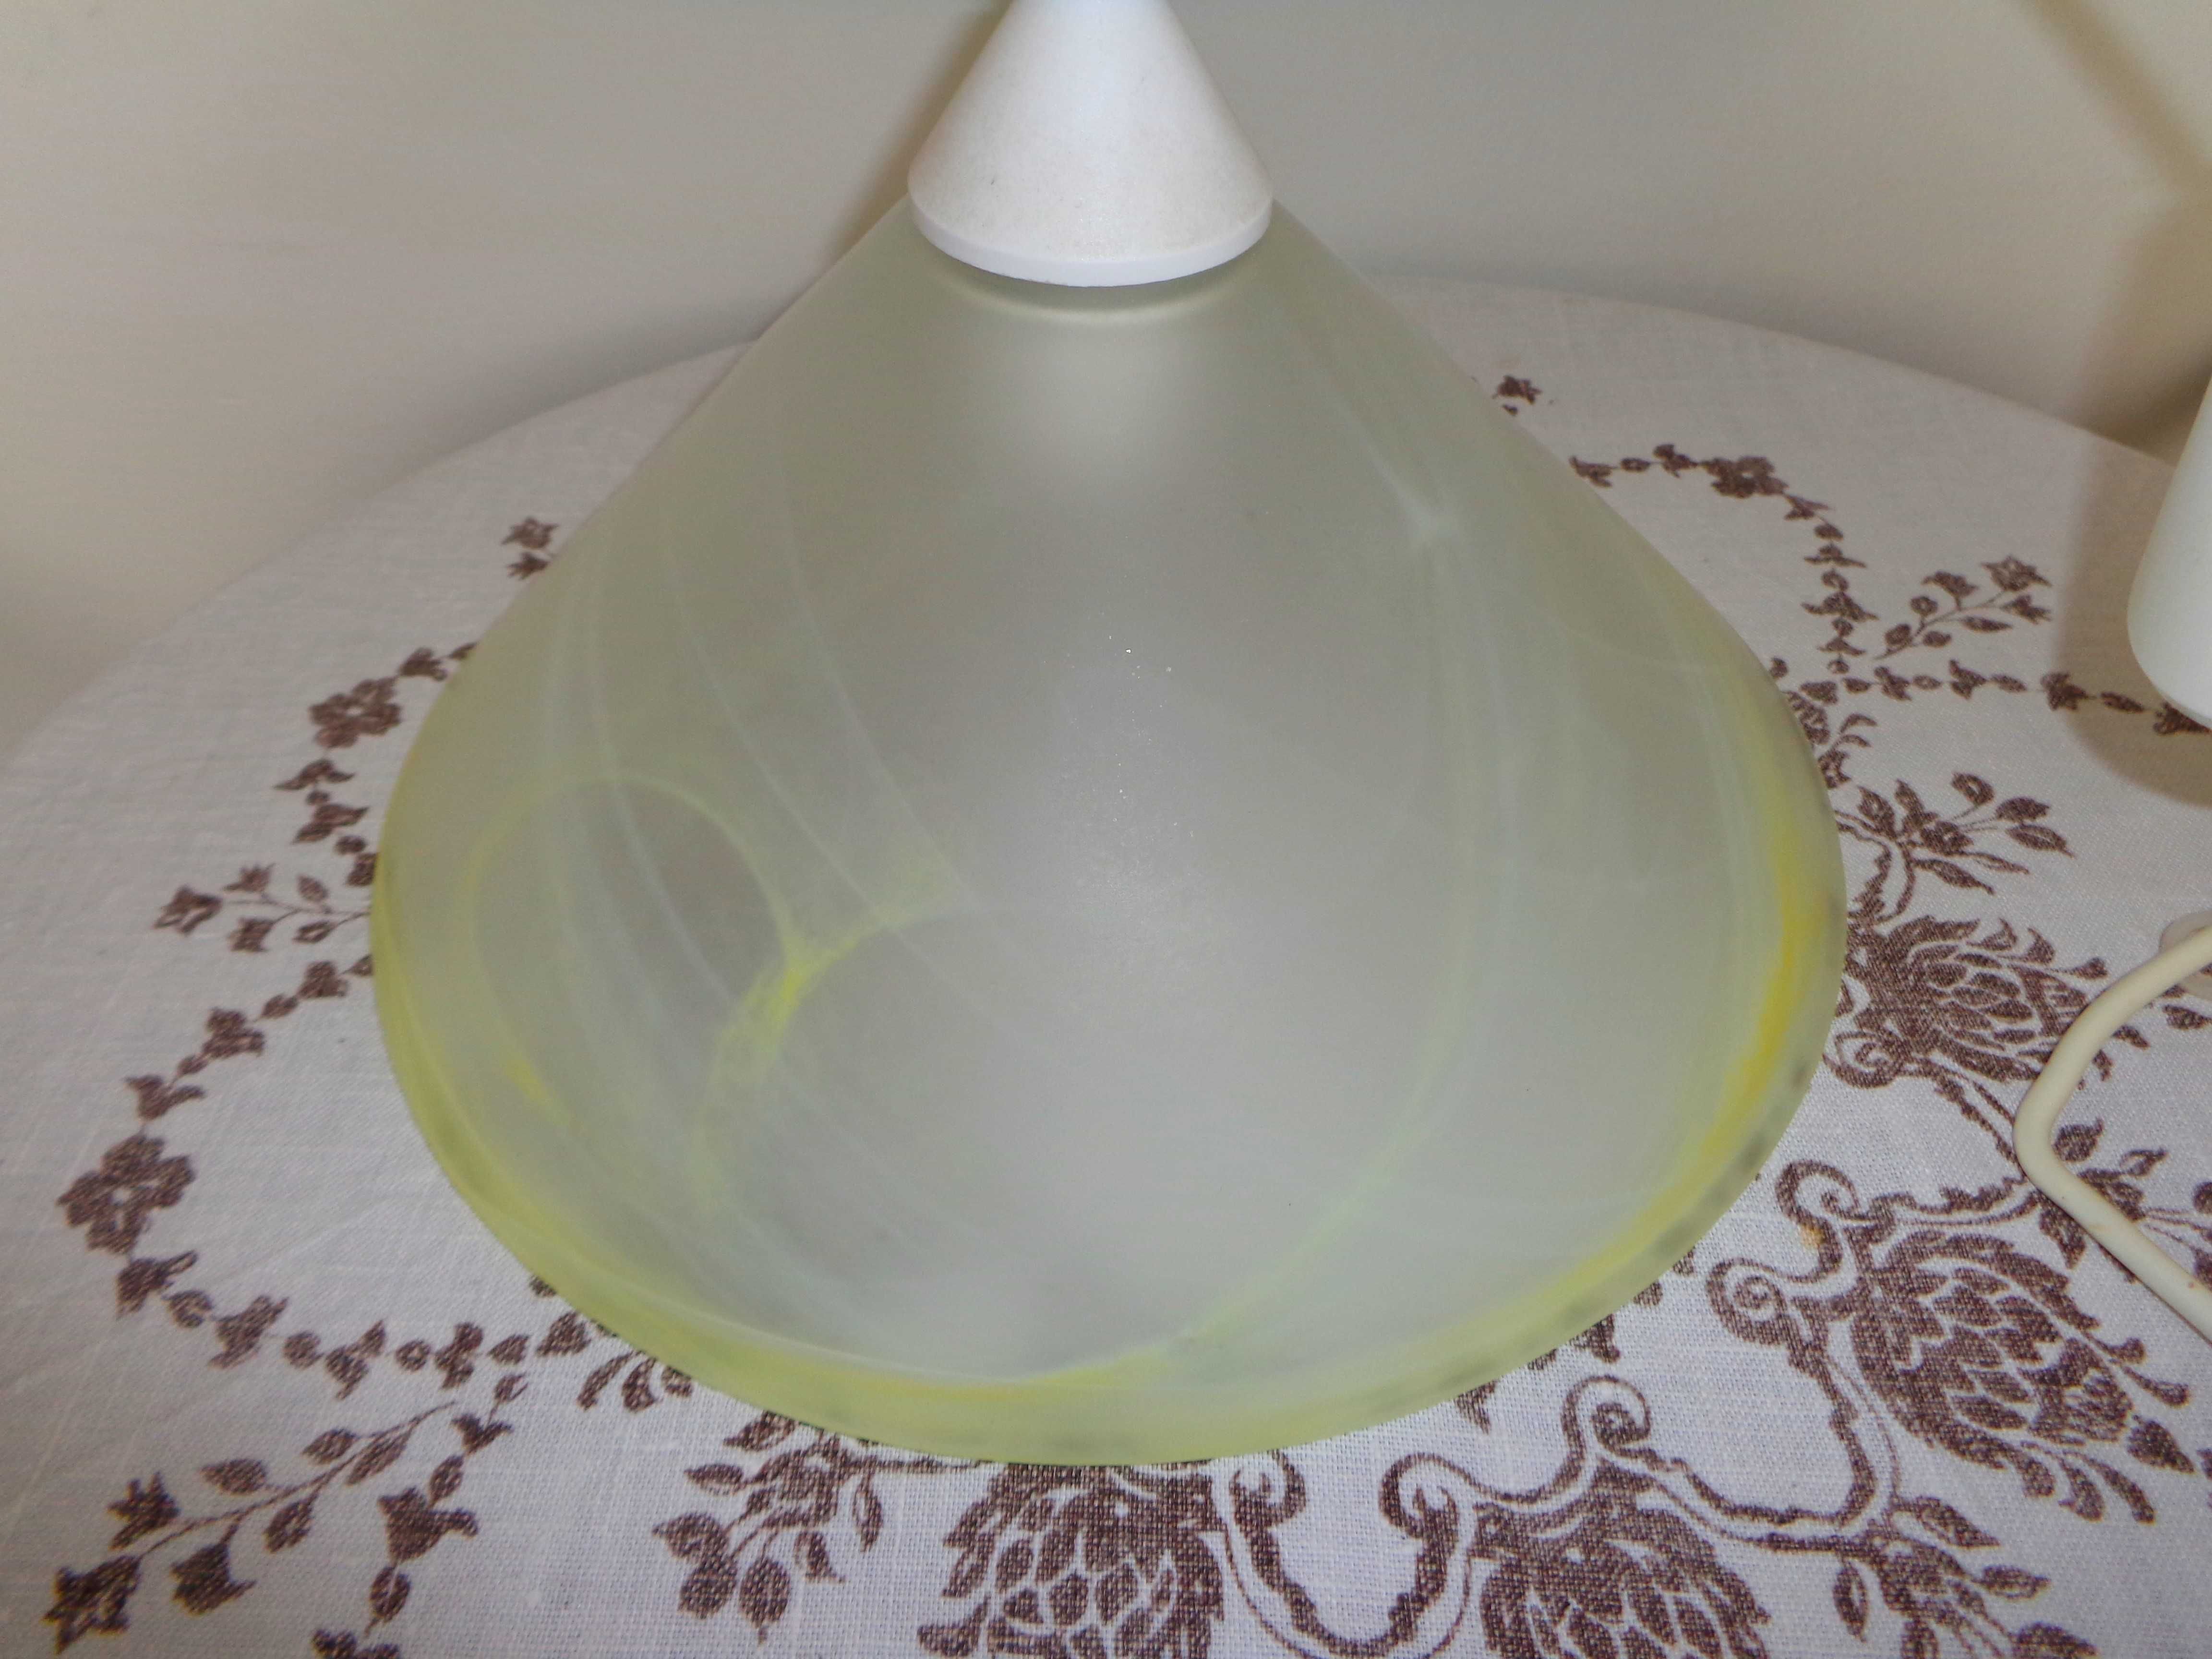 Lampa ze szklanym kloszem- wisząca- sufitowa 60W E27